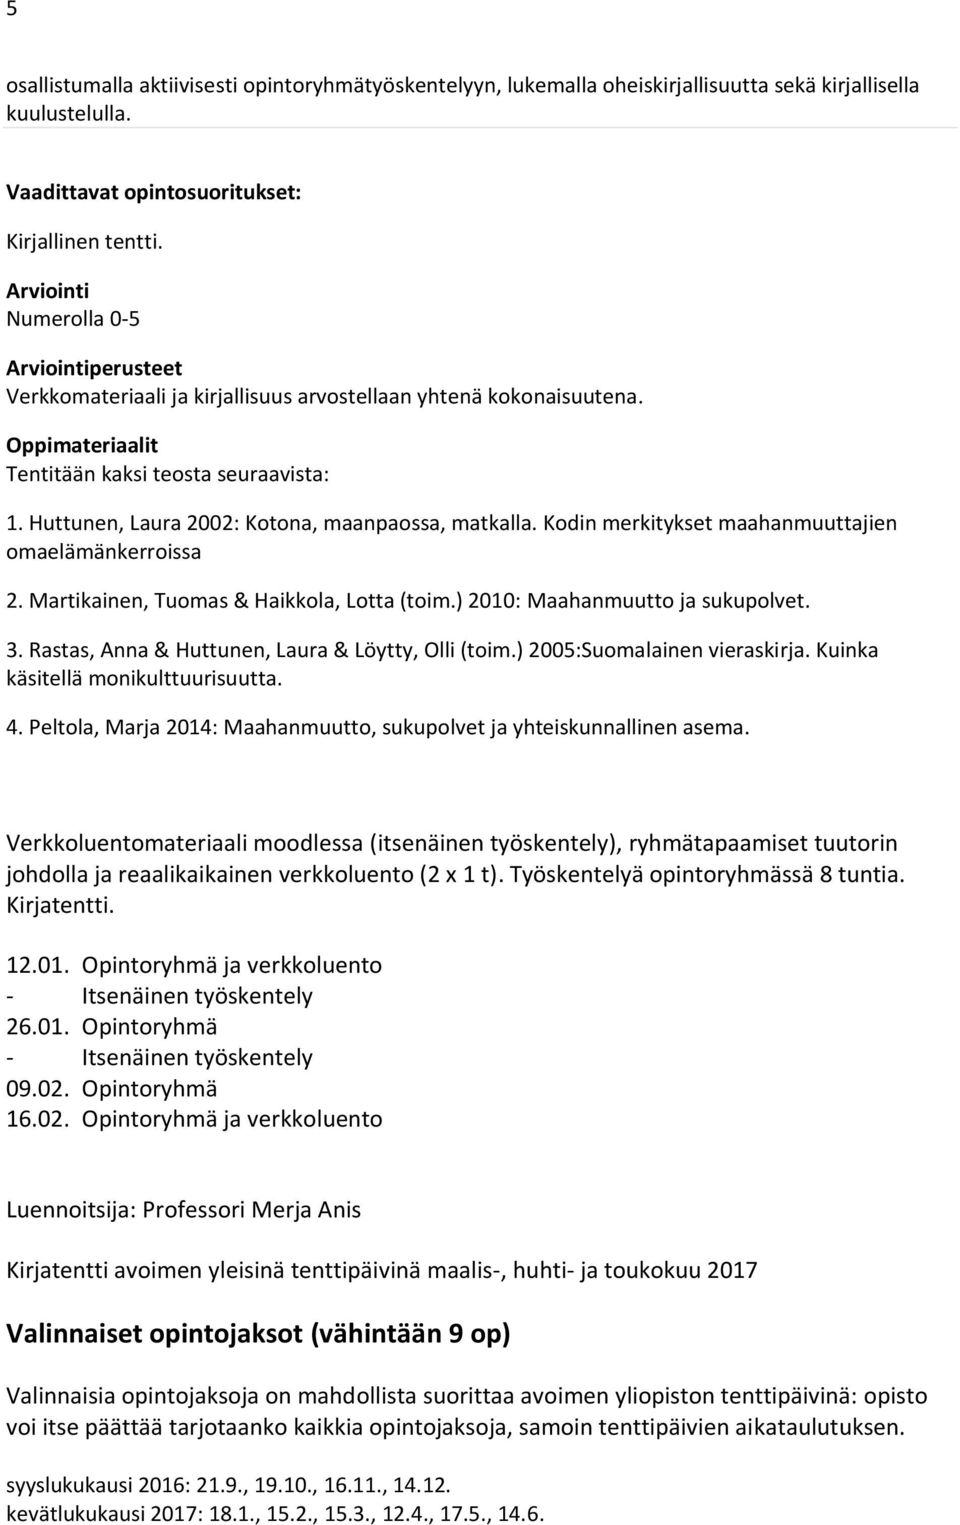 Kodin merkitykset maahanmuuttajien omaelämänkerroissa 2. Martikainen, Tuomas & Haikkola, Lotta (toim.) 2010: Maahanmuutto ja sukupolvet. 3. Rastas, Anna & Huttunen, Laura & Löytty, Olli (toim.